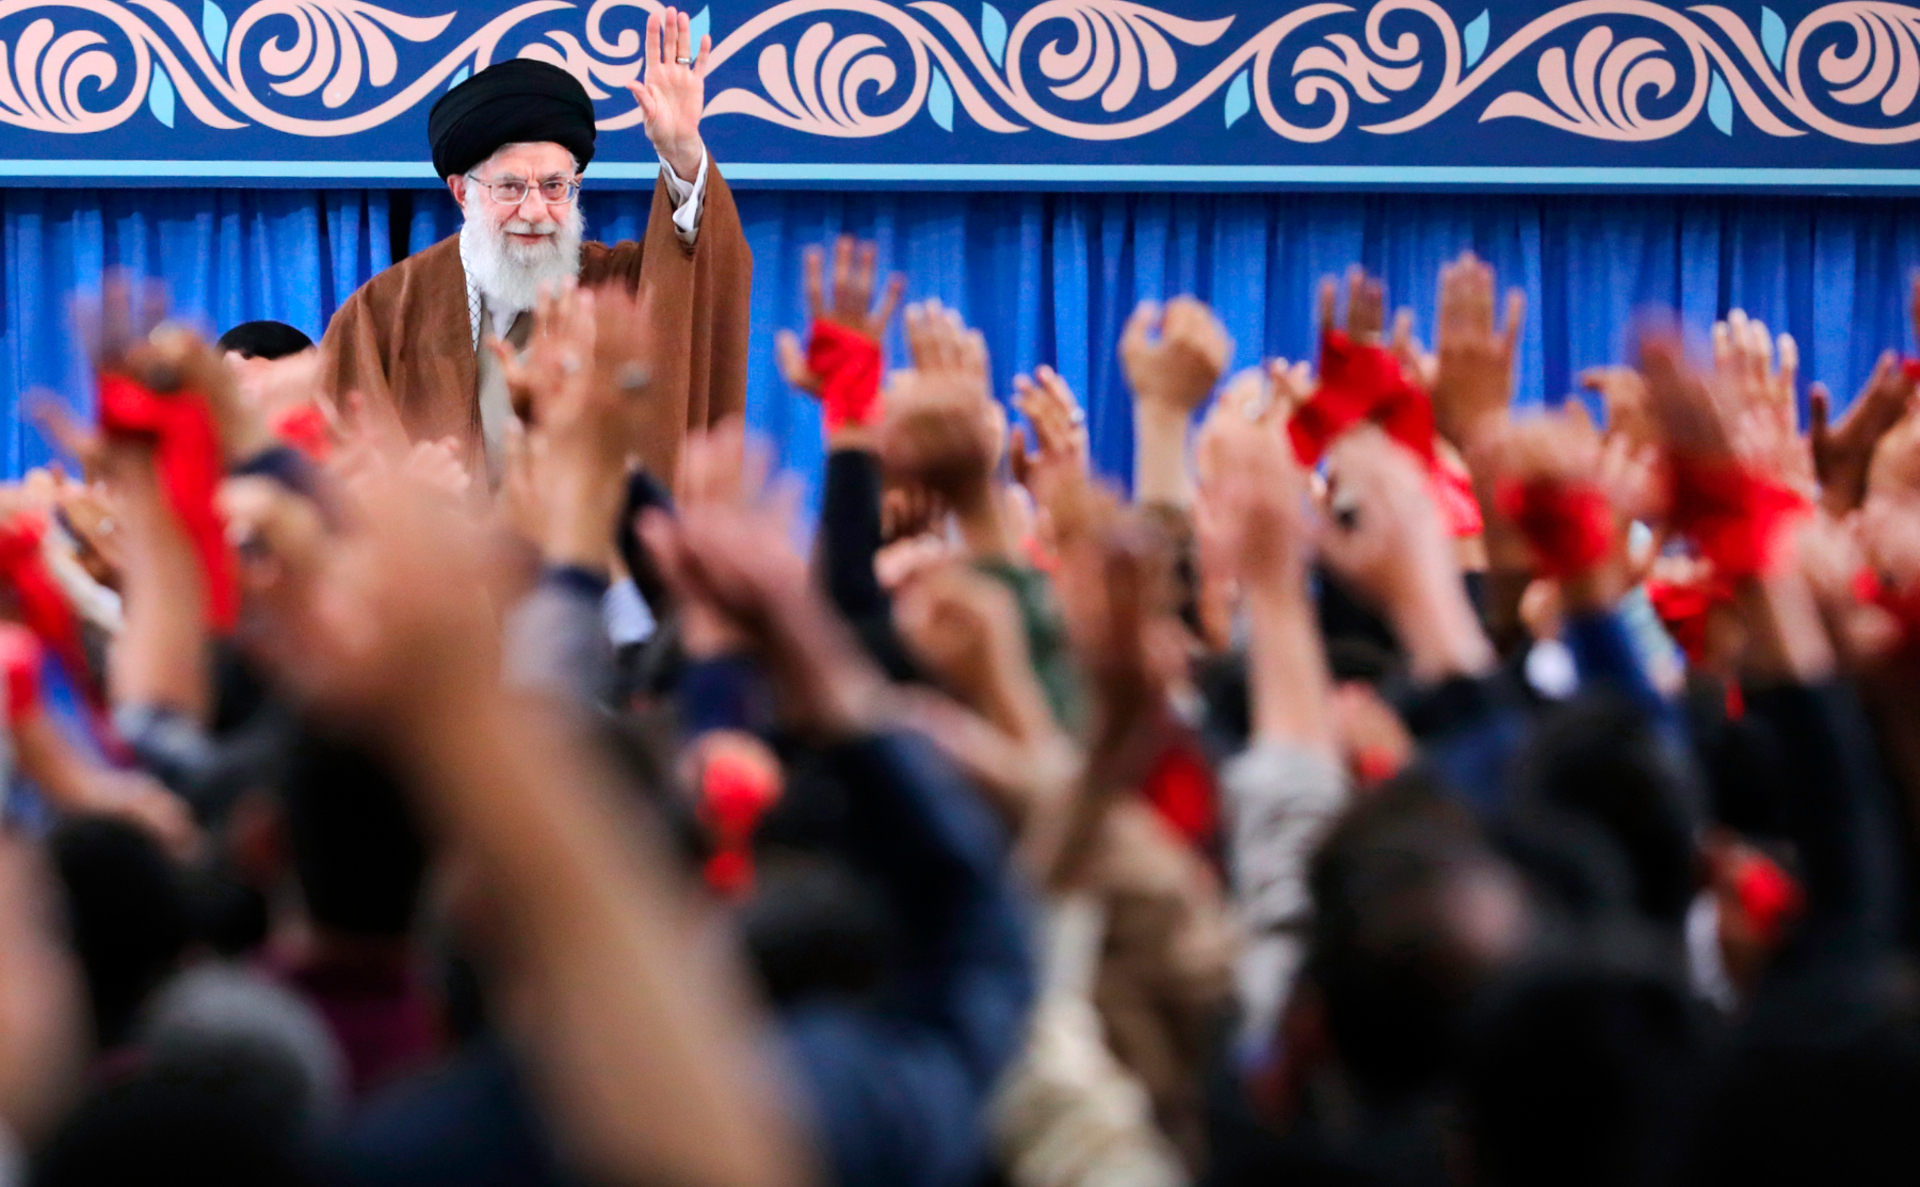 Фото:Пресс-служба аятоллы Али Хаменеи / AP